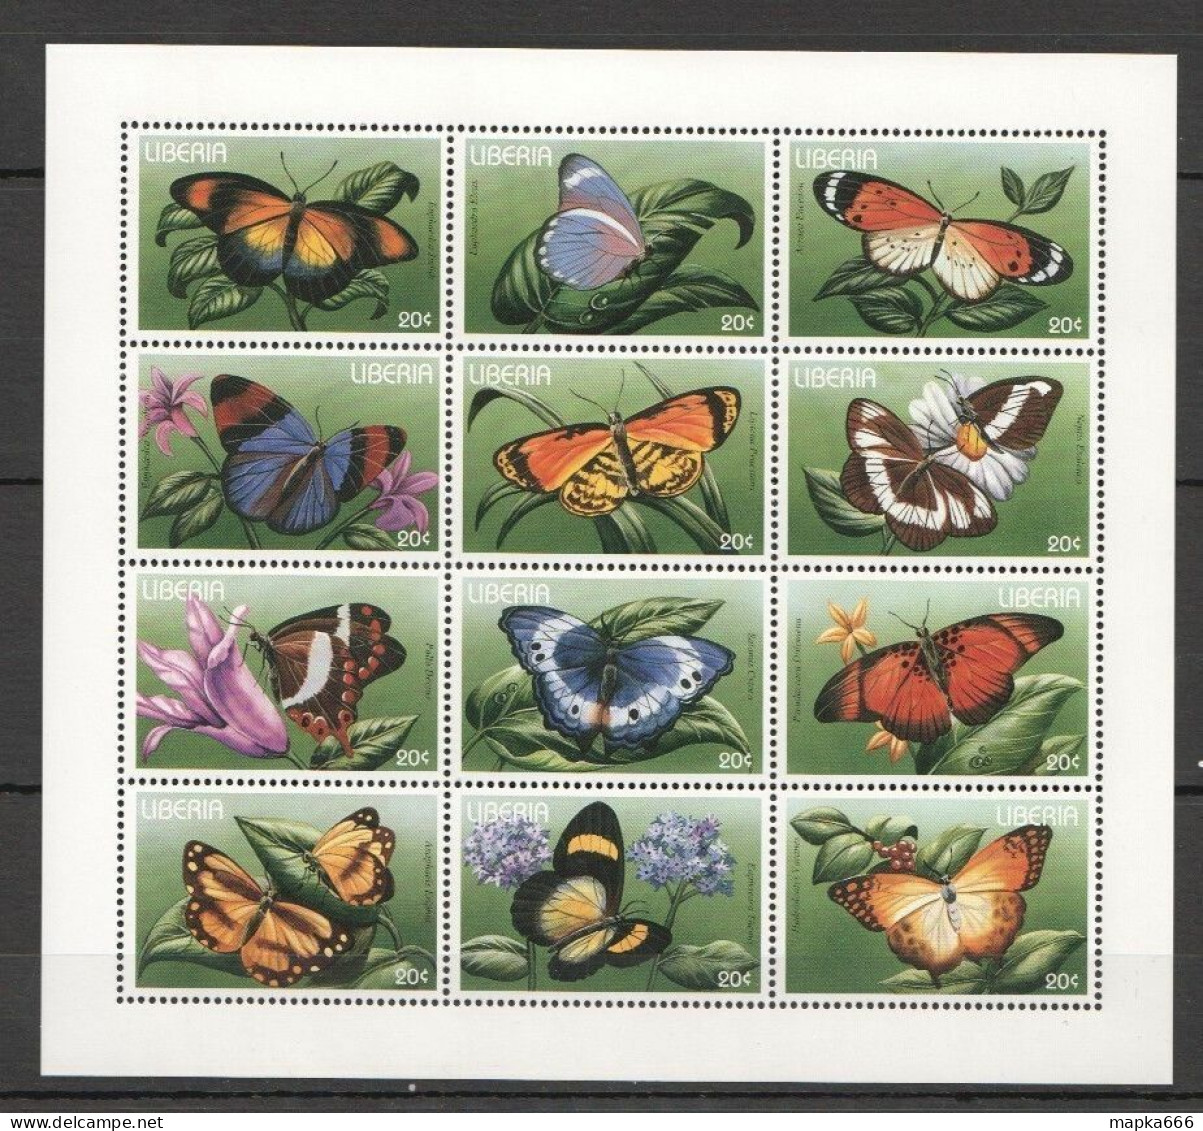 B1507 Liberia Flora & Fauna Butterflies Insects 1Sh Mnh Stamps - Butterflies